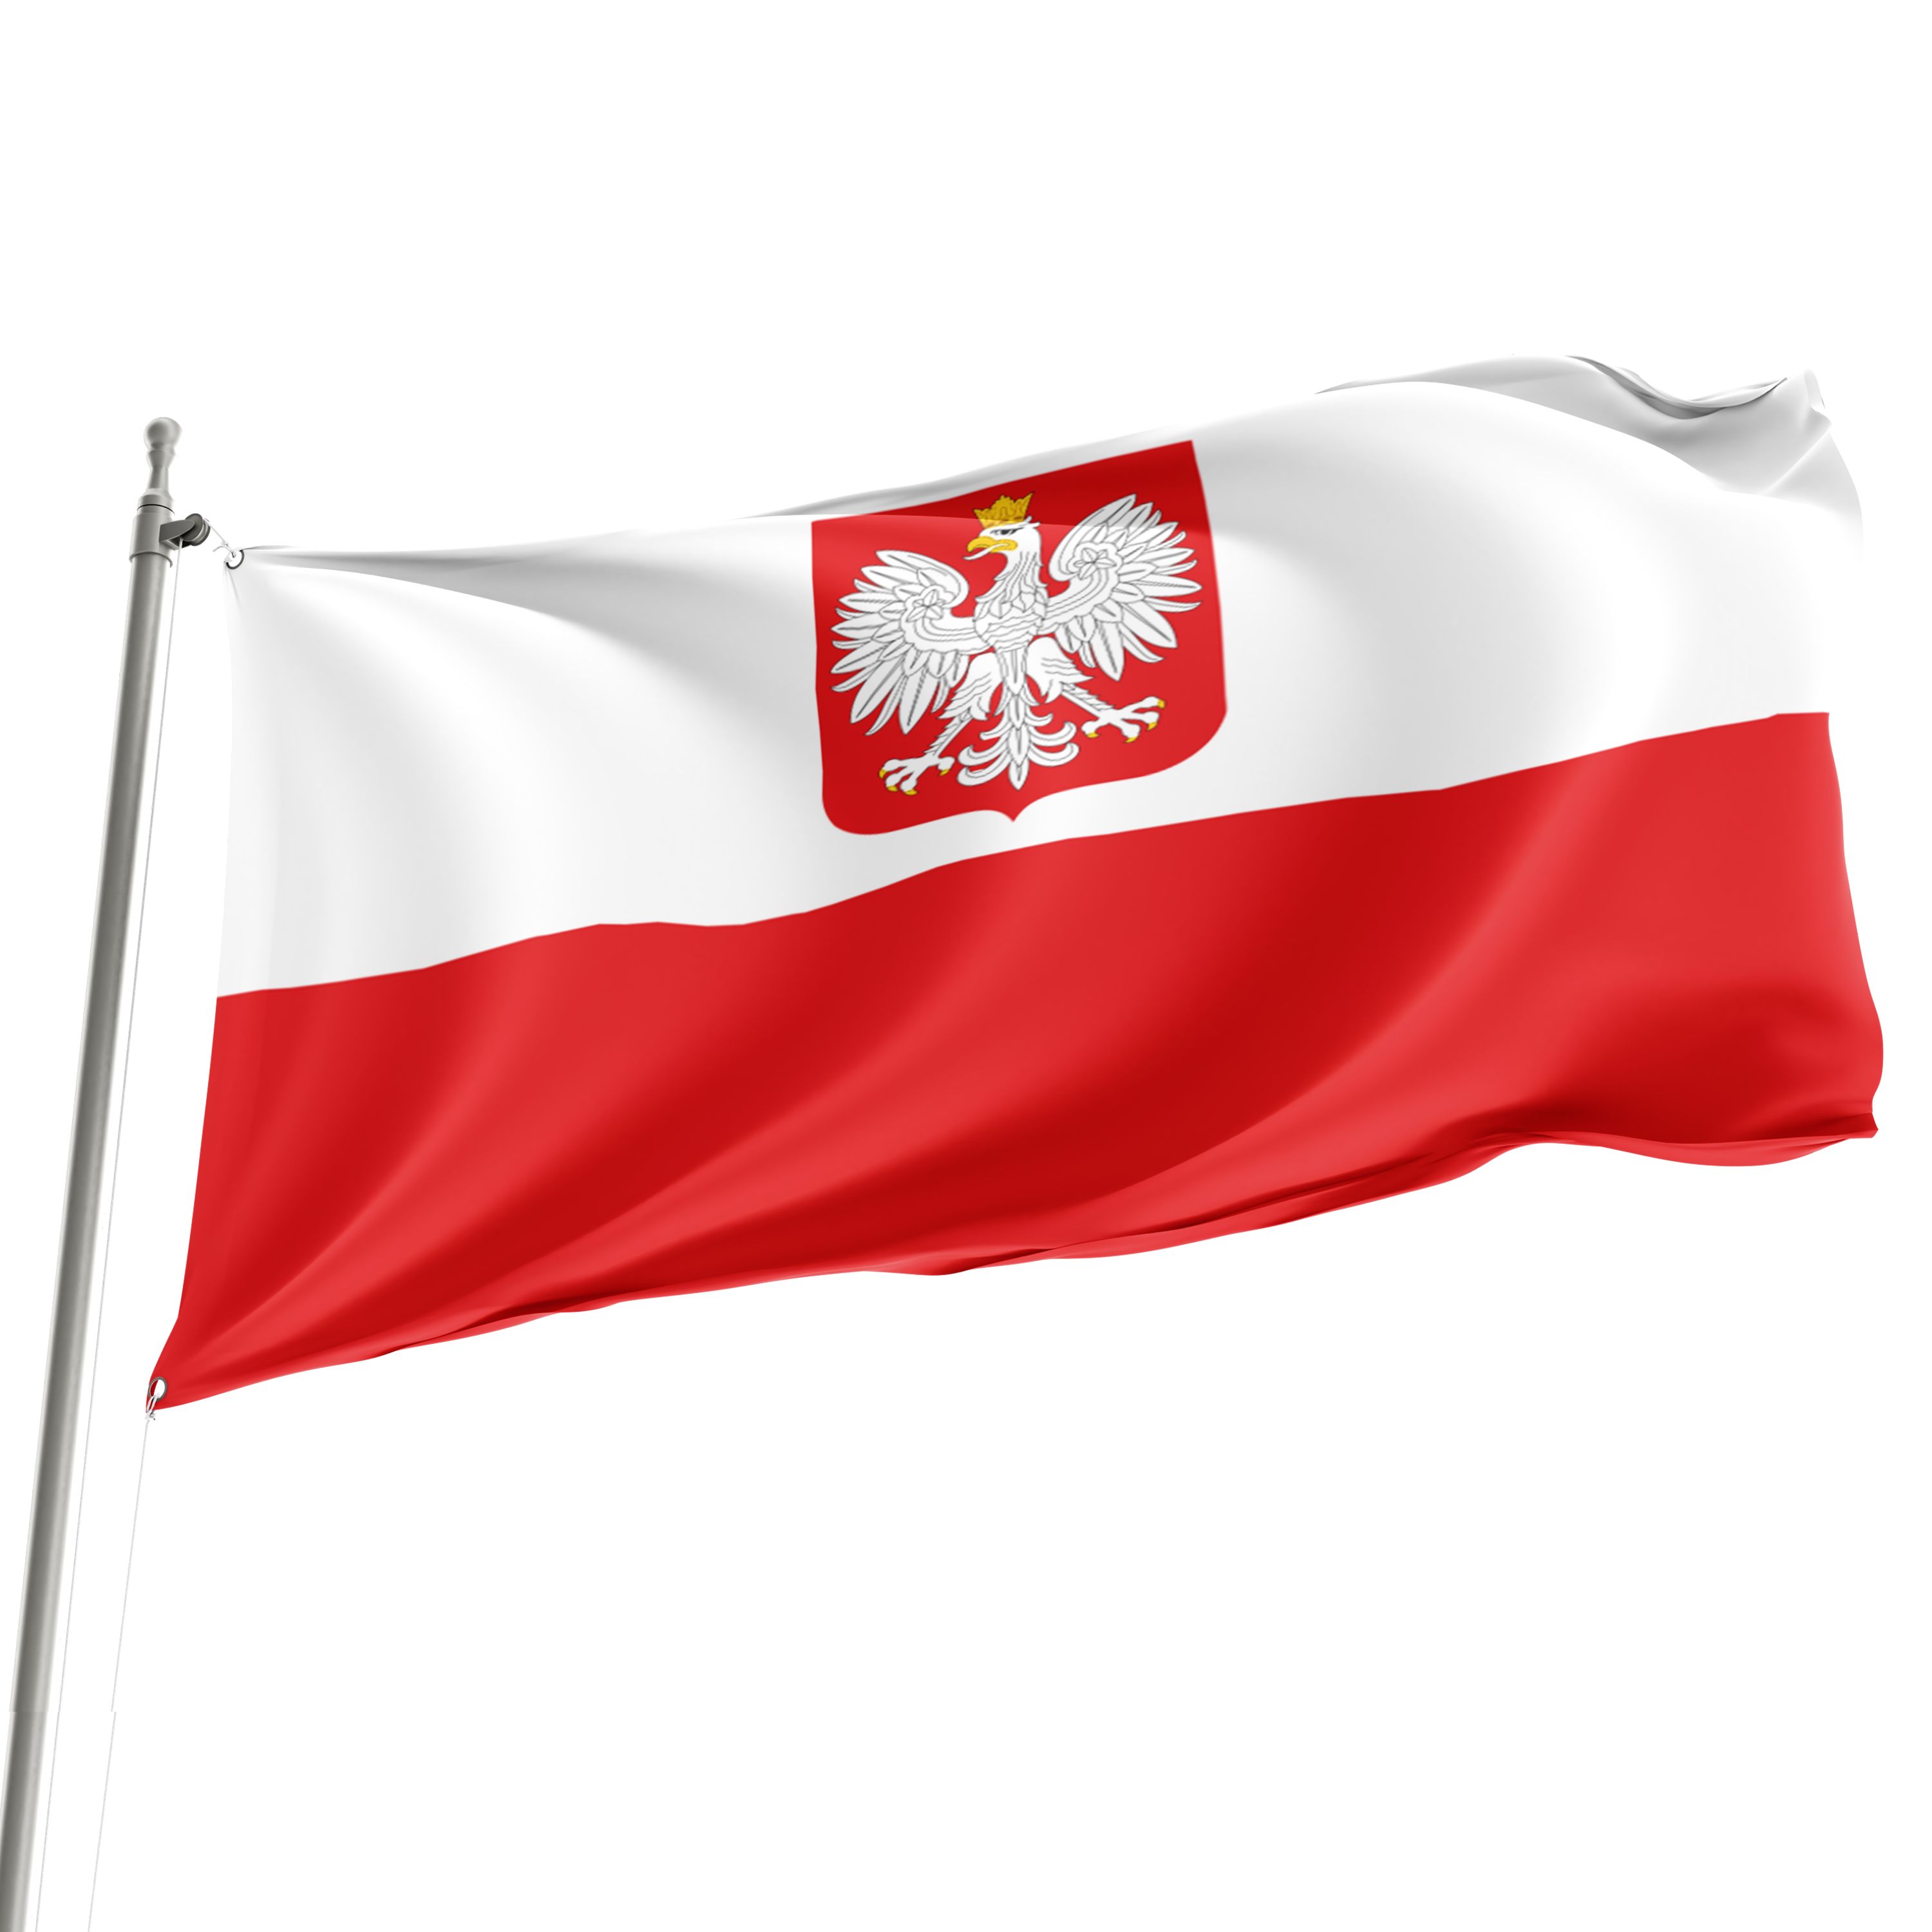 3' x 5' Poland Naval Crest Flag